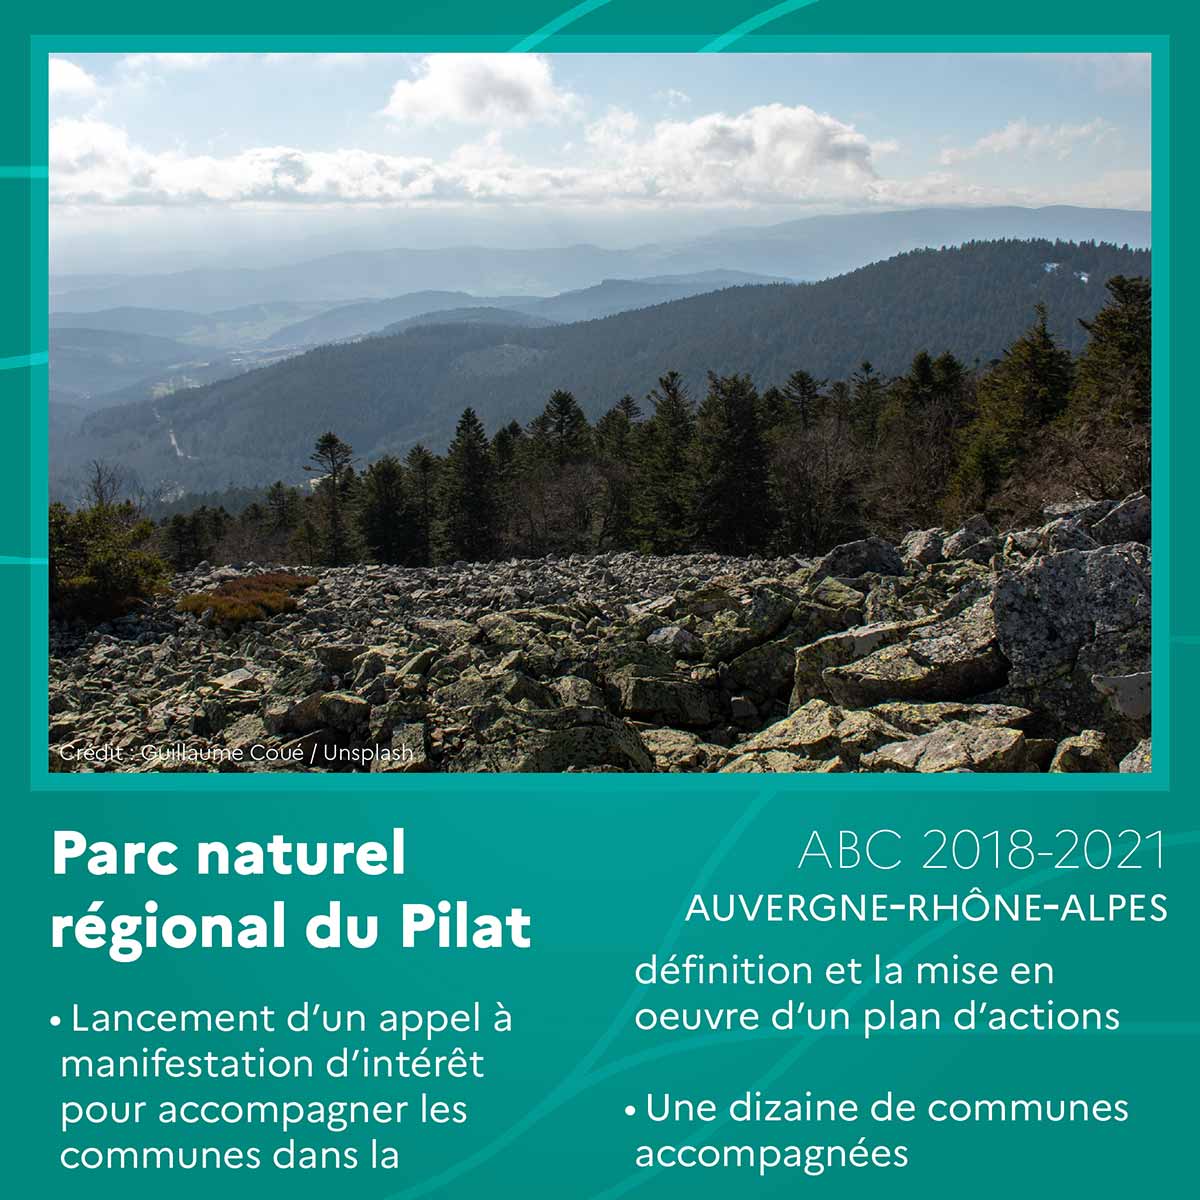 Parc naturel régional du Pilat (Auvergne-Rhône-Alpes)